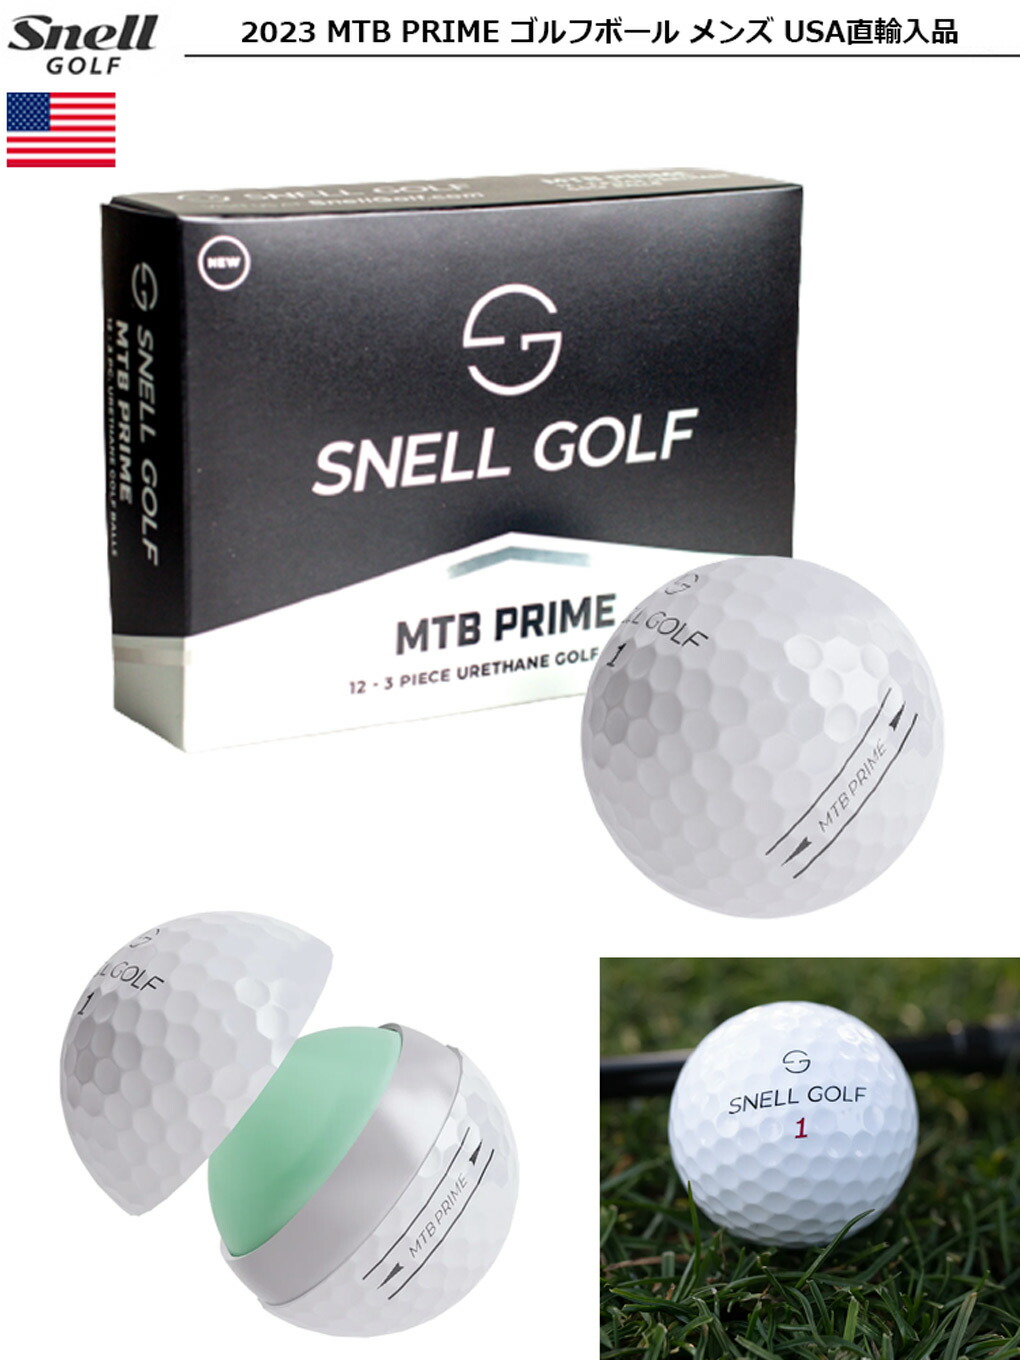 スネルゴルフ 2023 MTB PRIME ゴルフボール メンズ 3ピース ウレタンカバー Snell Golf MTBプライム USA直輸入品  ジーパーズ公式オンラインショップ（JYPER'S）